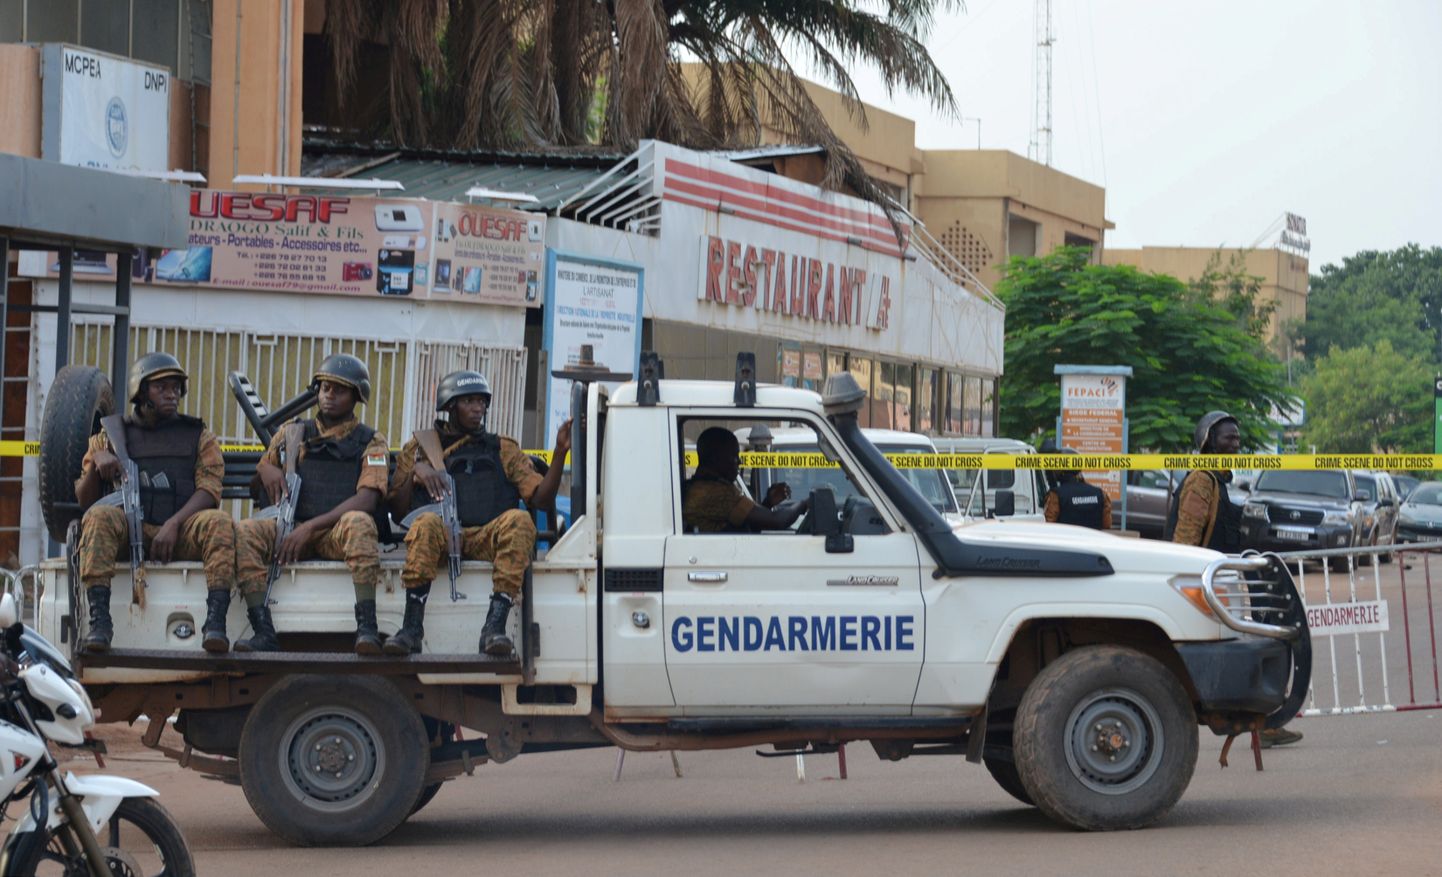 Eelmise aasta pilt, kui kaitseliitlased kaitsesid Burkina Fasoses hoonet. Pilt on artiklit illustreeriv.